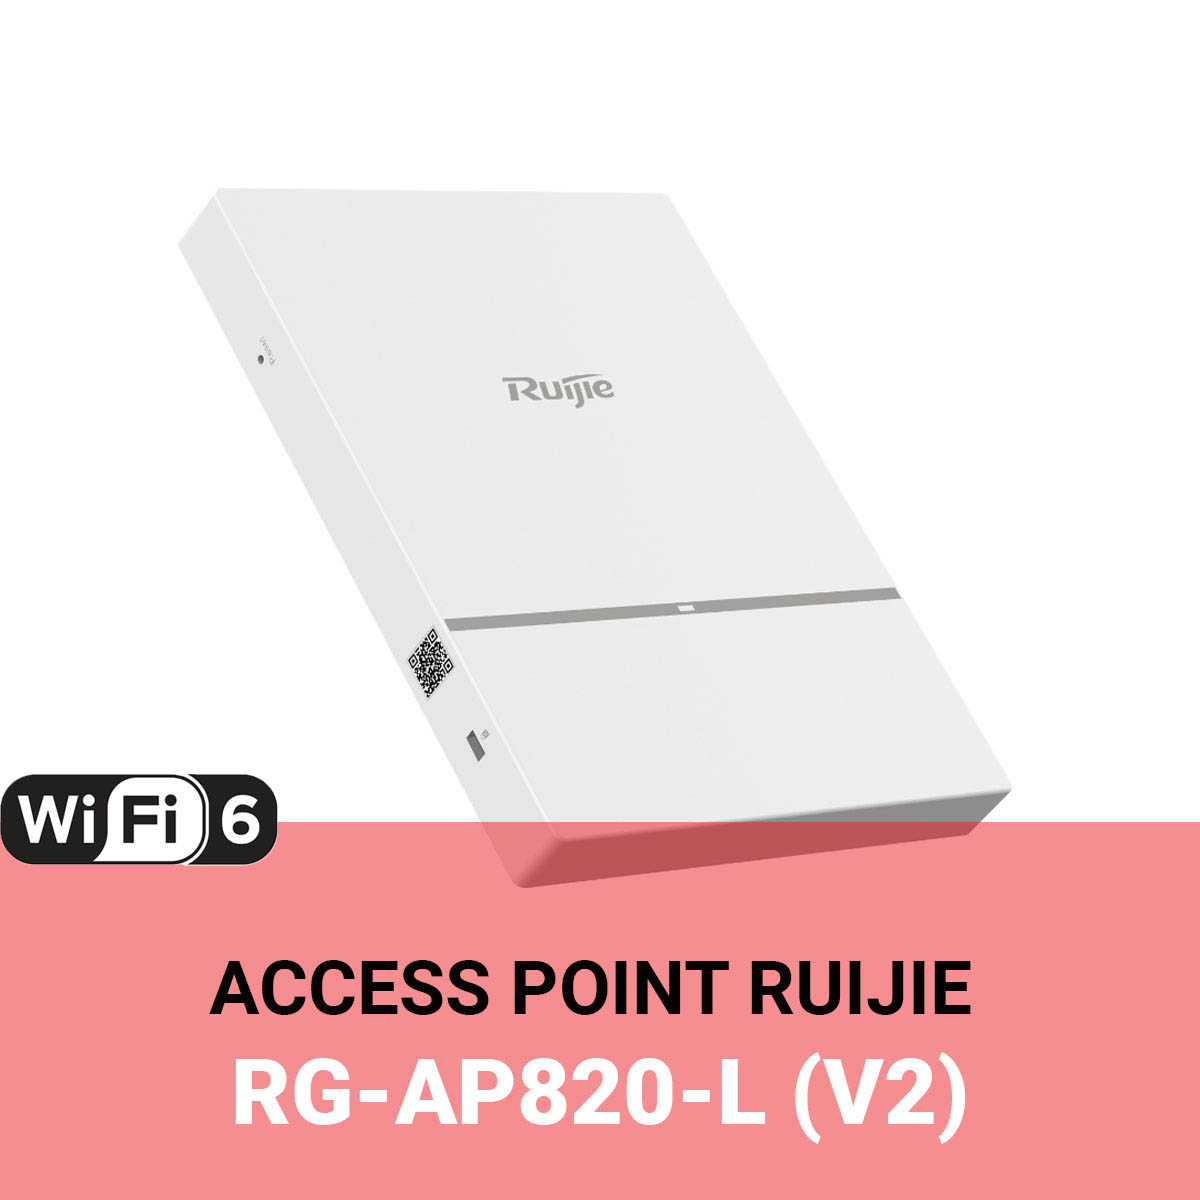 Ruijie RG-AP820-L (V2) 